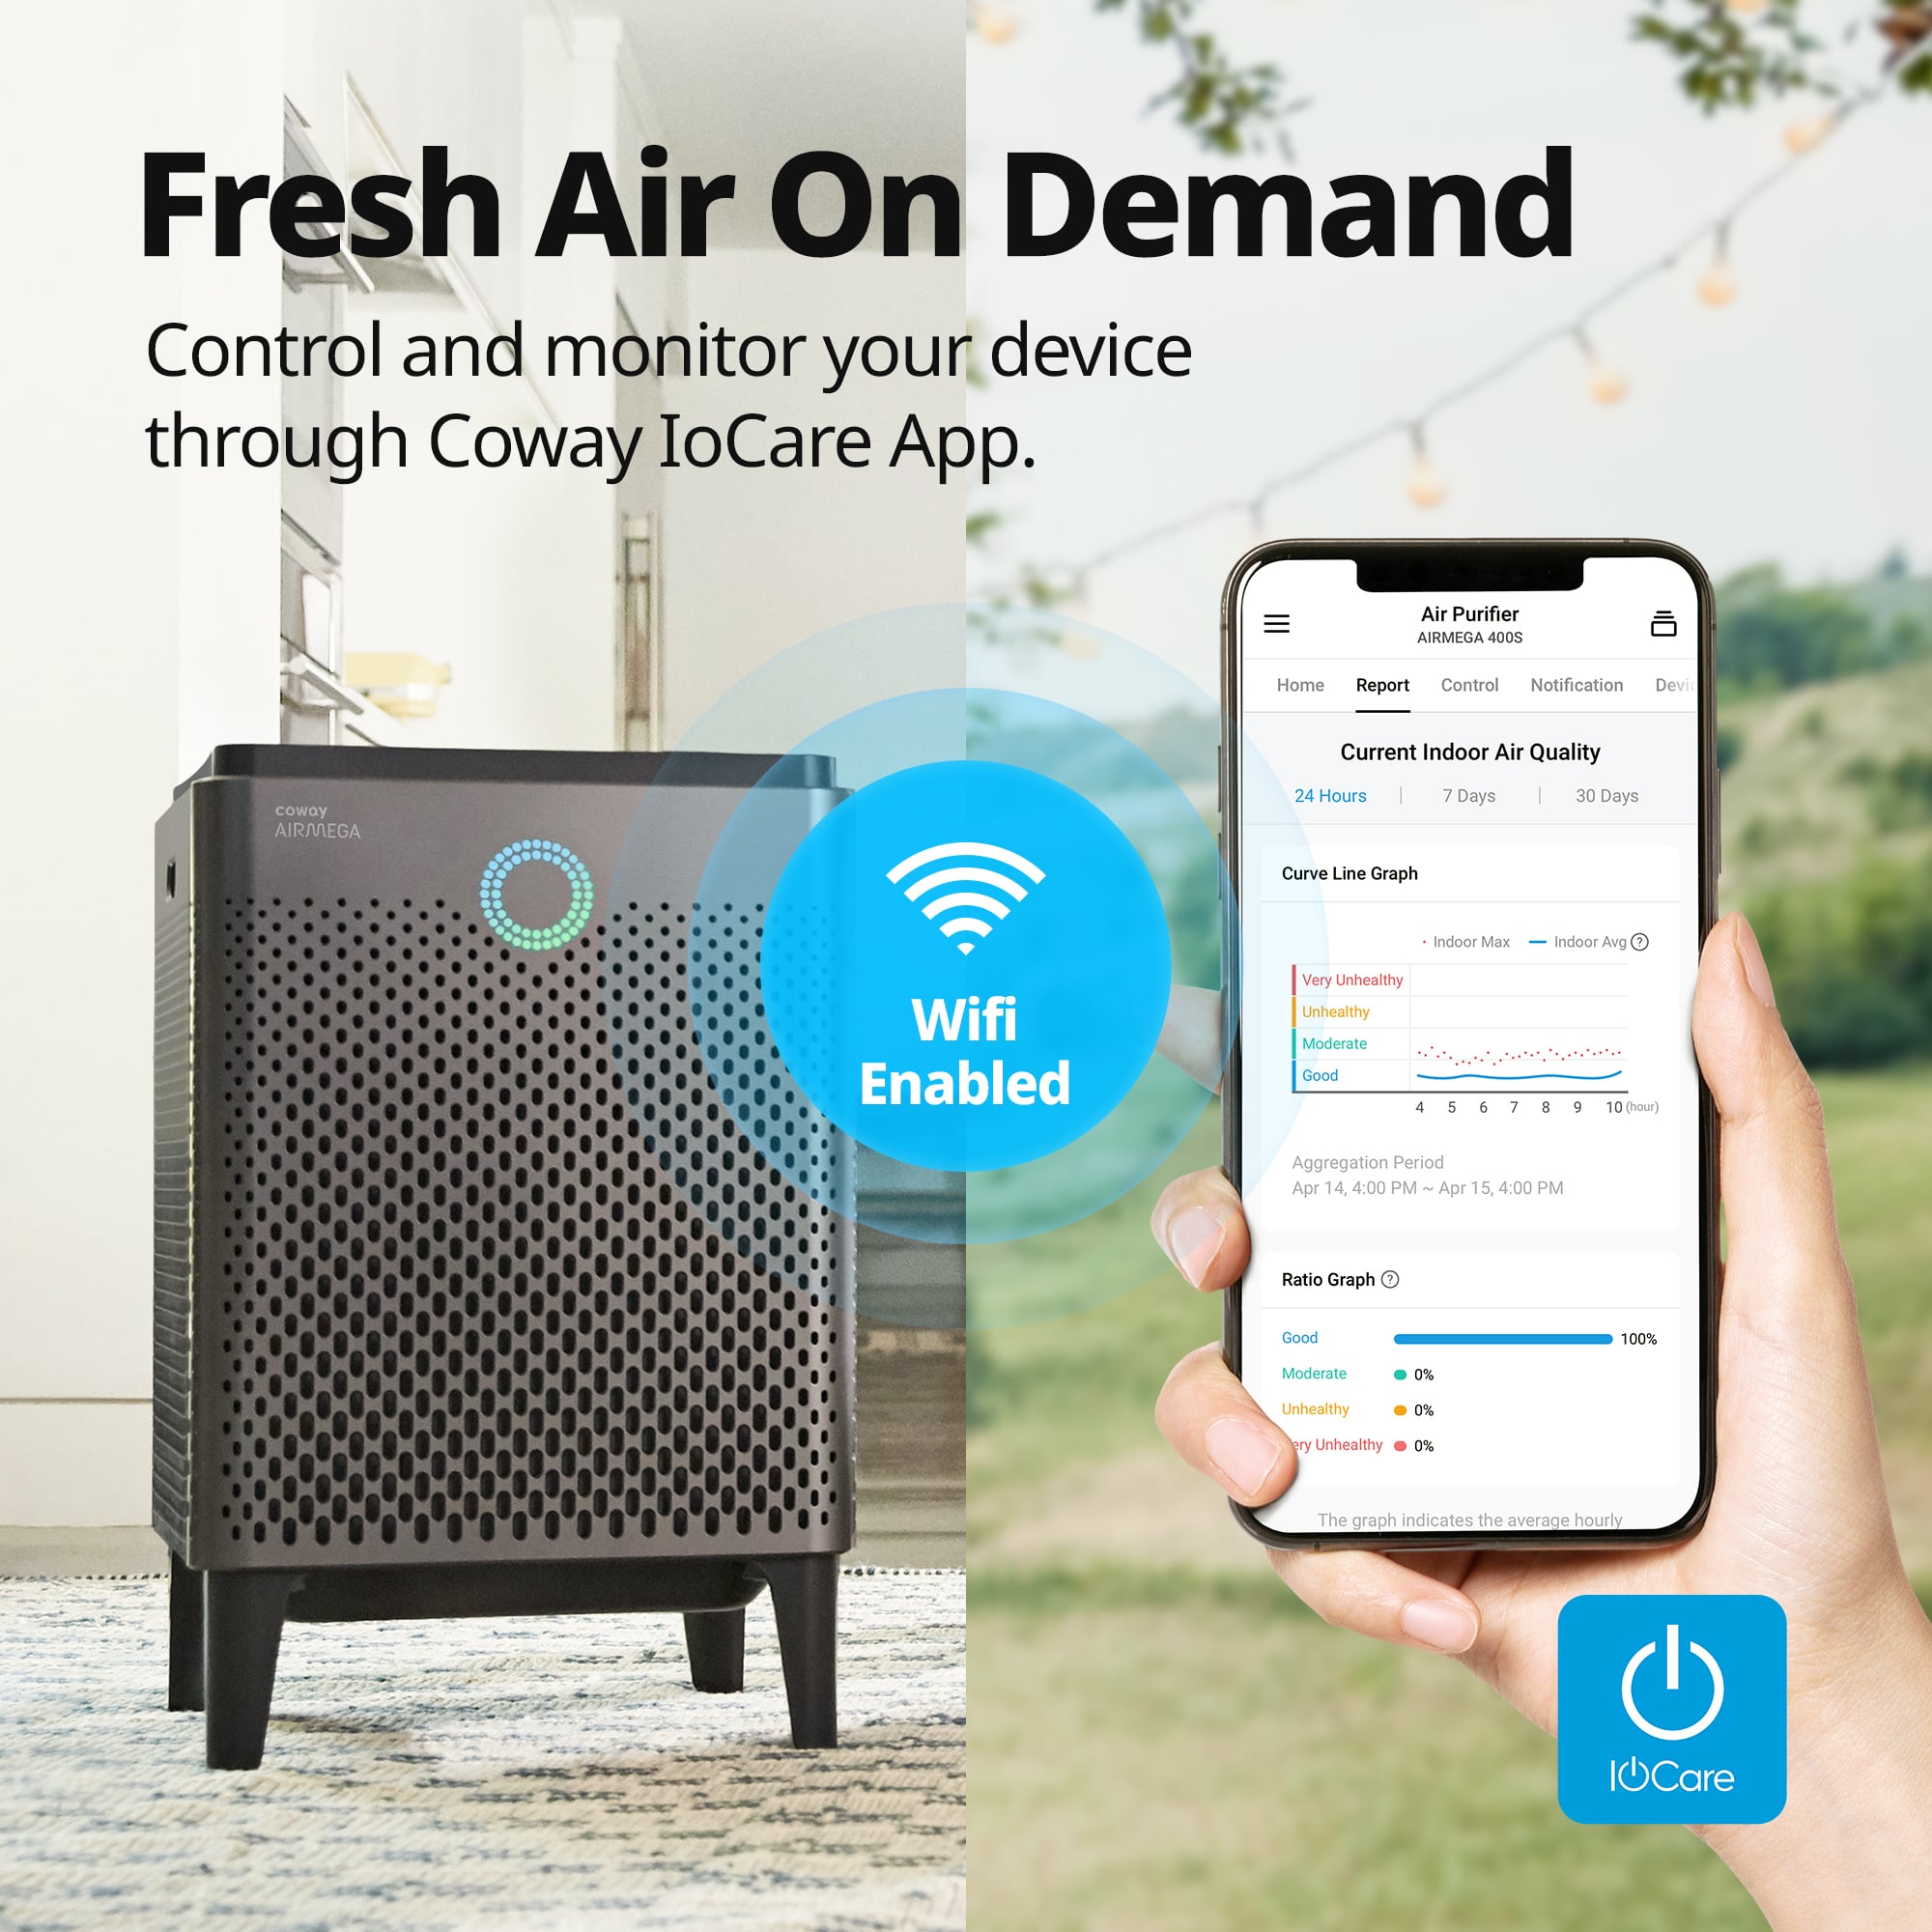 Fresh Air on Demand through IoCare App